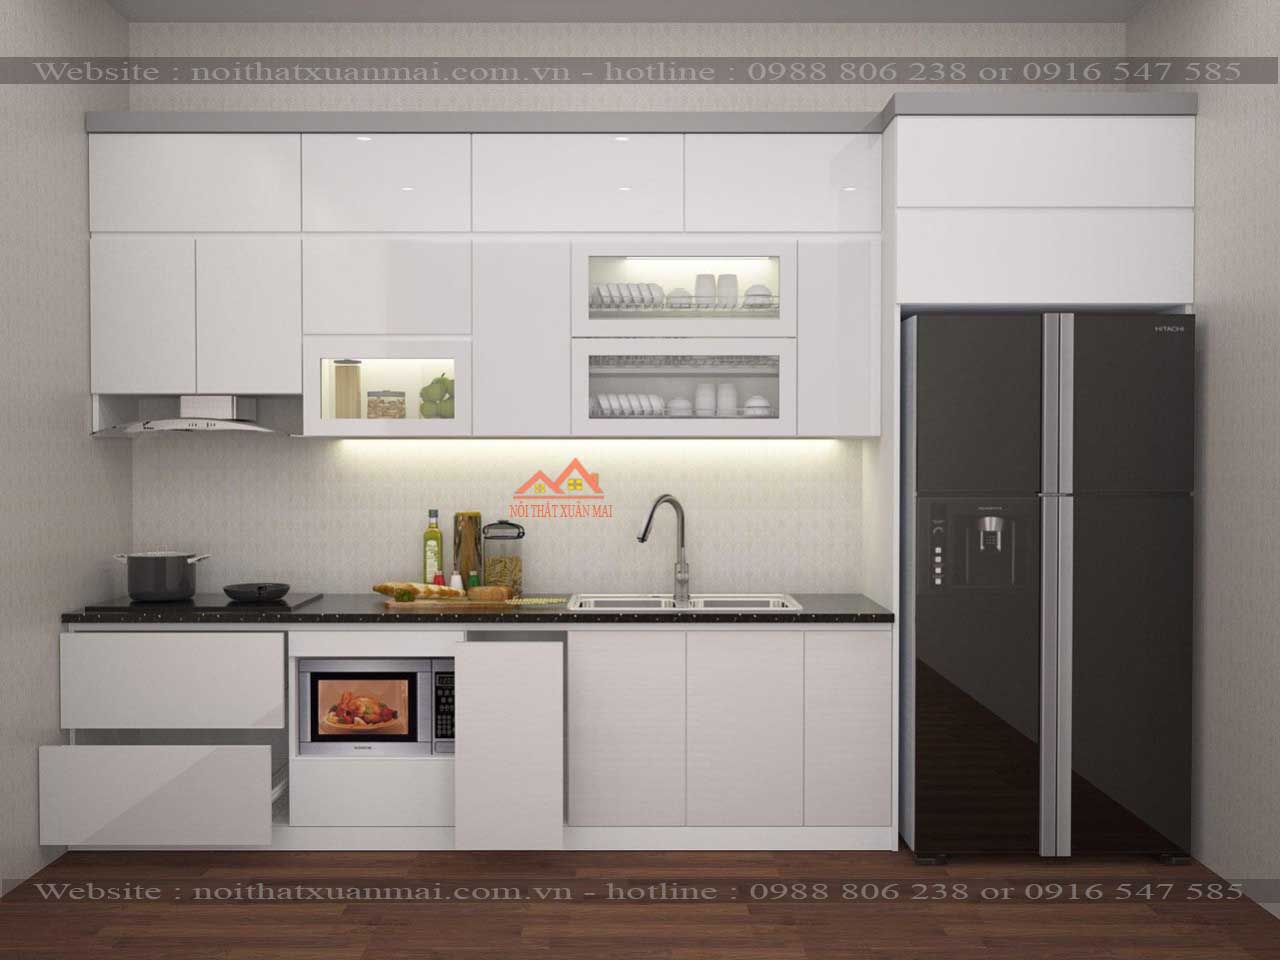 mẫu tủ bếp acrylic 2 tầng với gam màu trắng hiện đại, trẻ trung